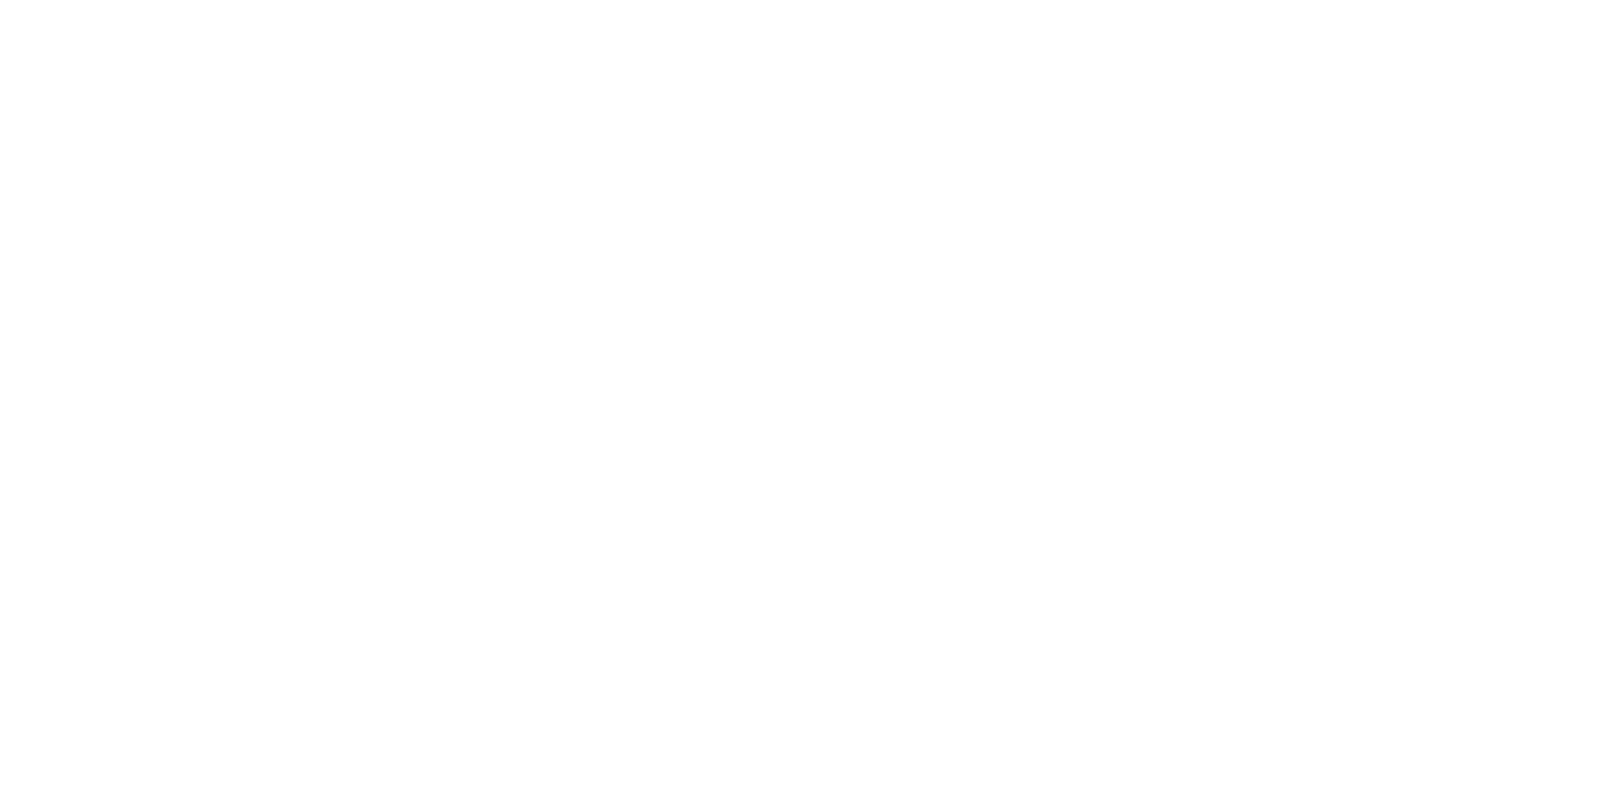 Polaris Estate Planning and Elder Law